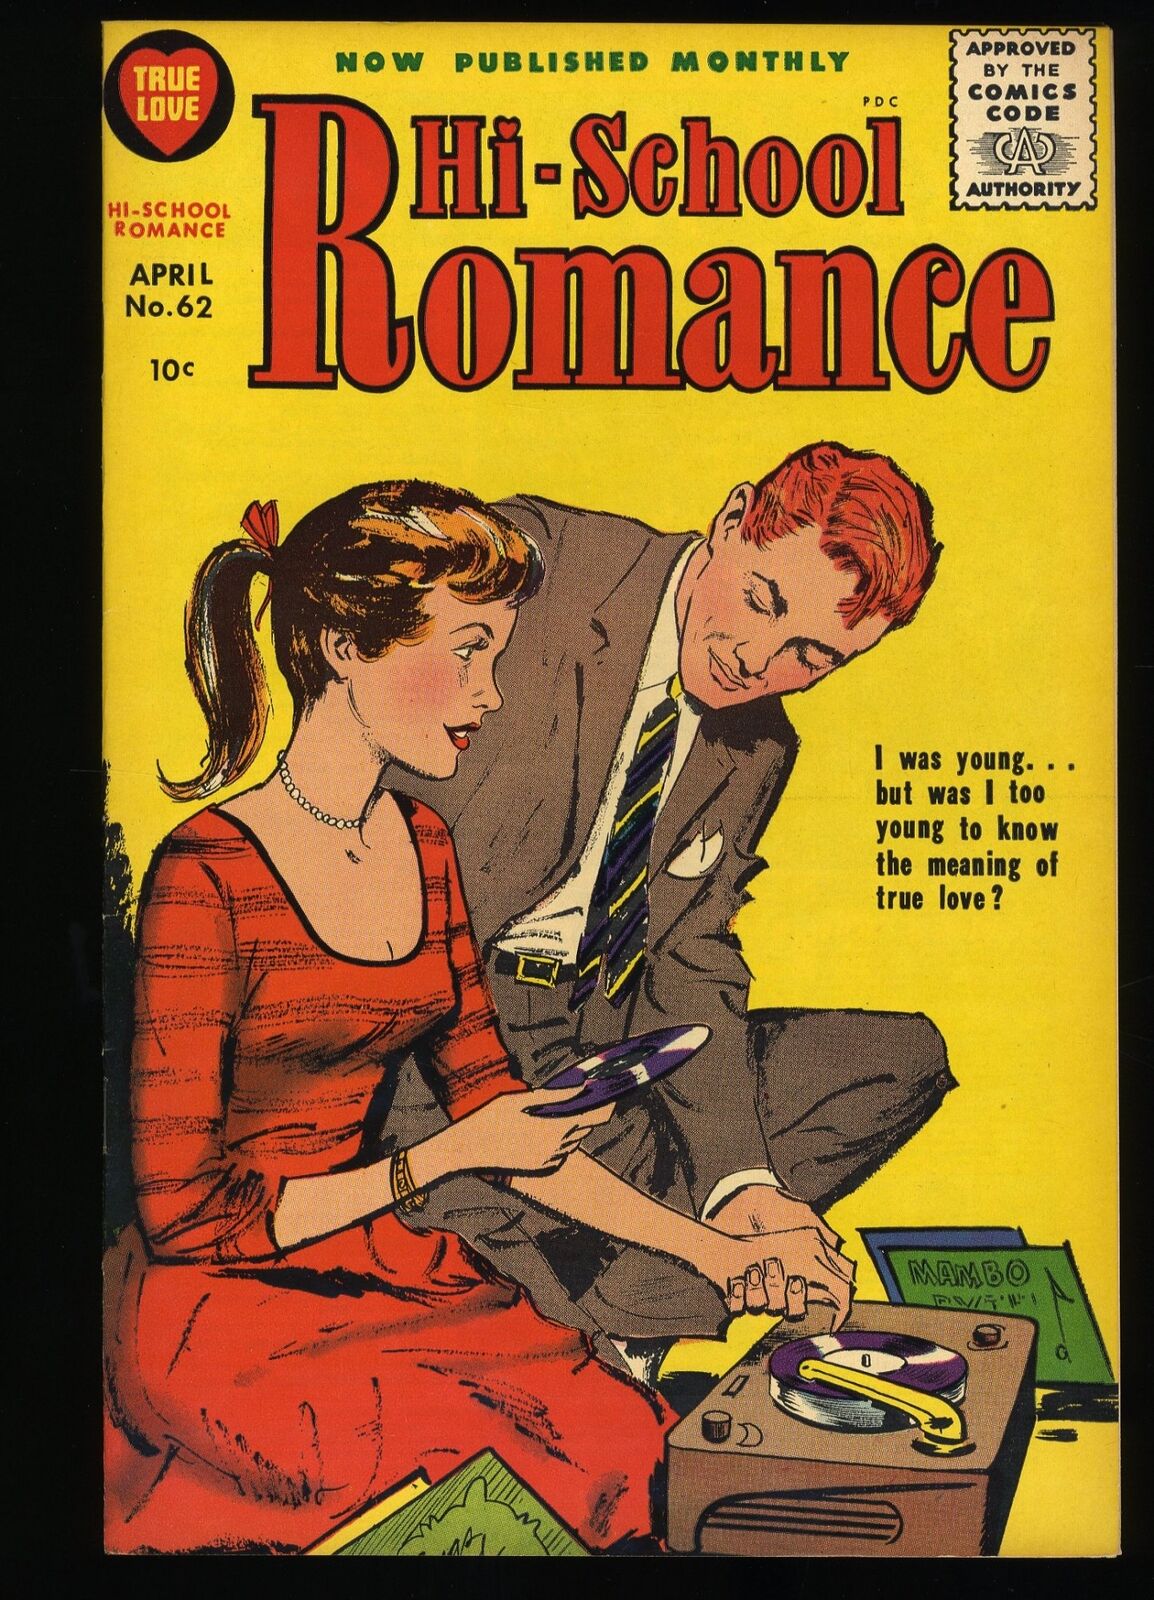 Hi-School Romance #62 VF+ 8.5 Harvey Publications (Home Comics) 1955